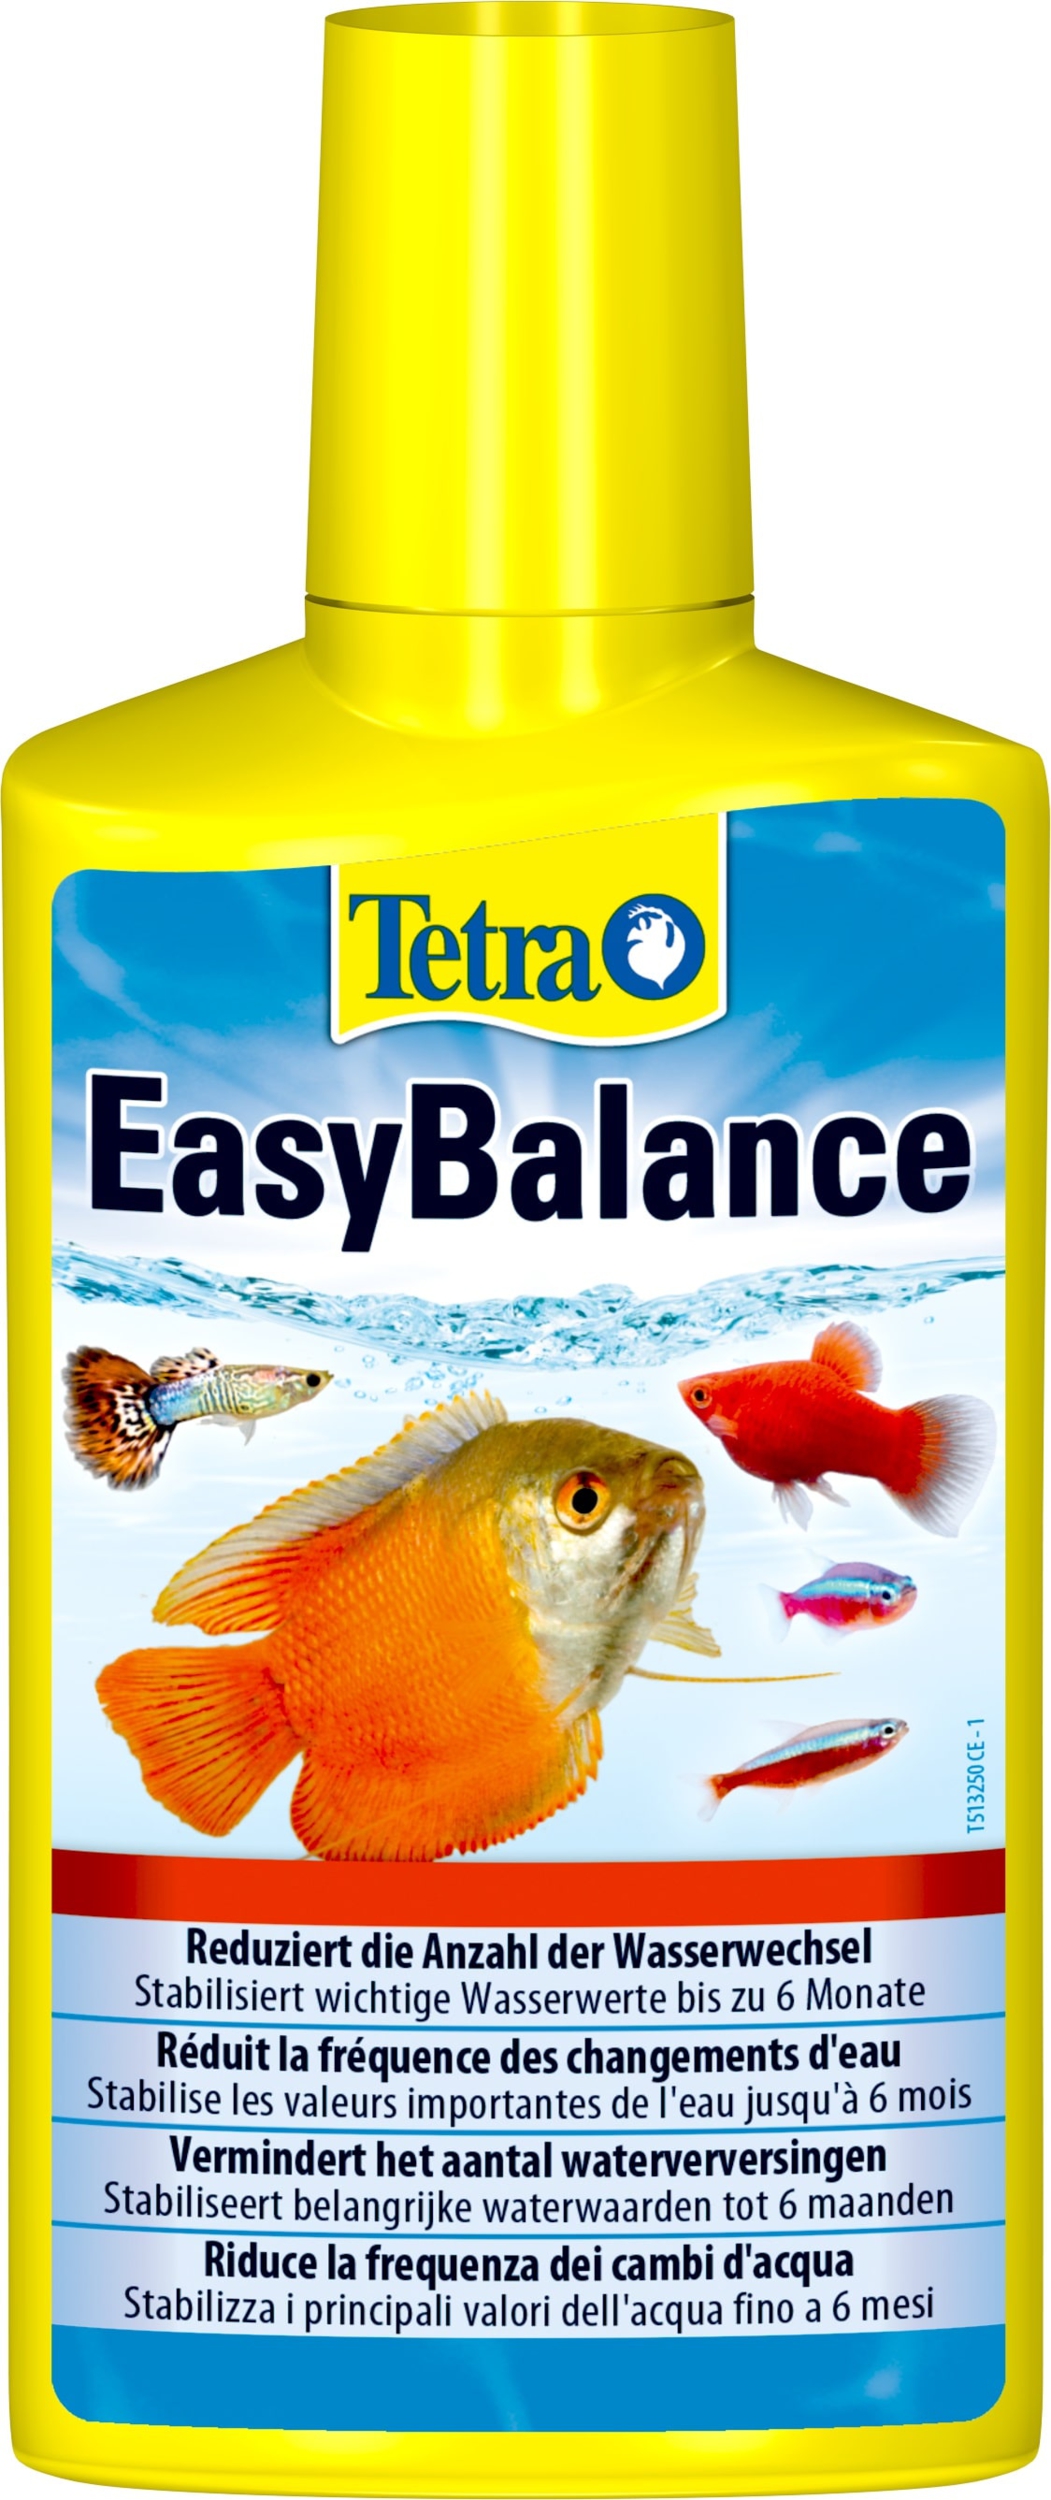 tetra-easybalance-250-ml-preserve-durablement-l-equilibre-biologique-de-l-eau-de-l-aquarium-jusqu-a-6-mois-min